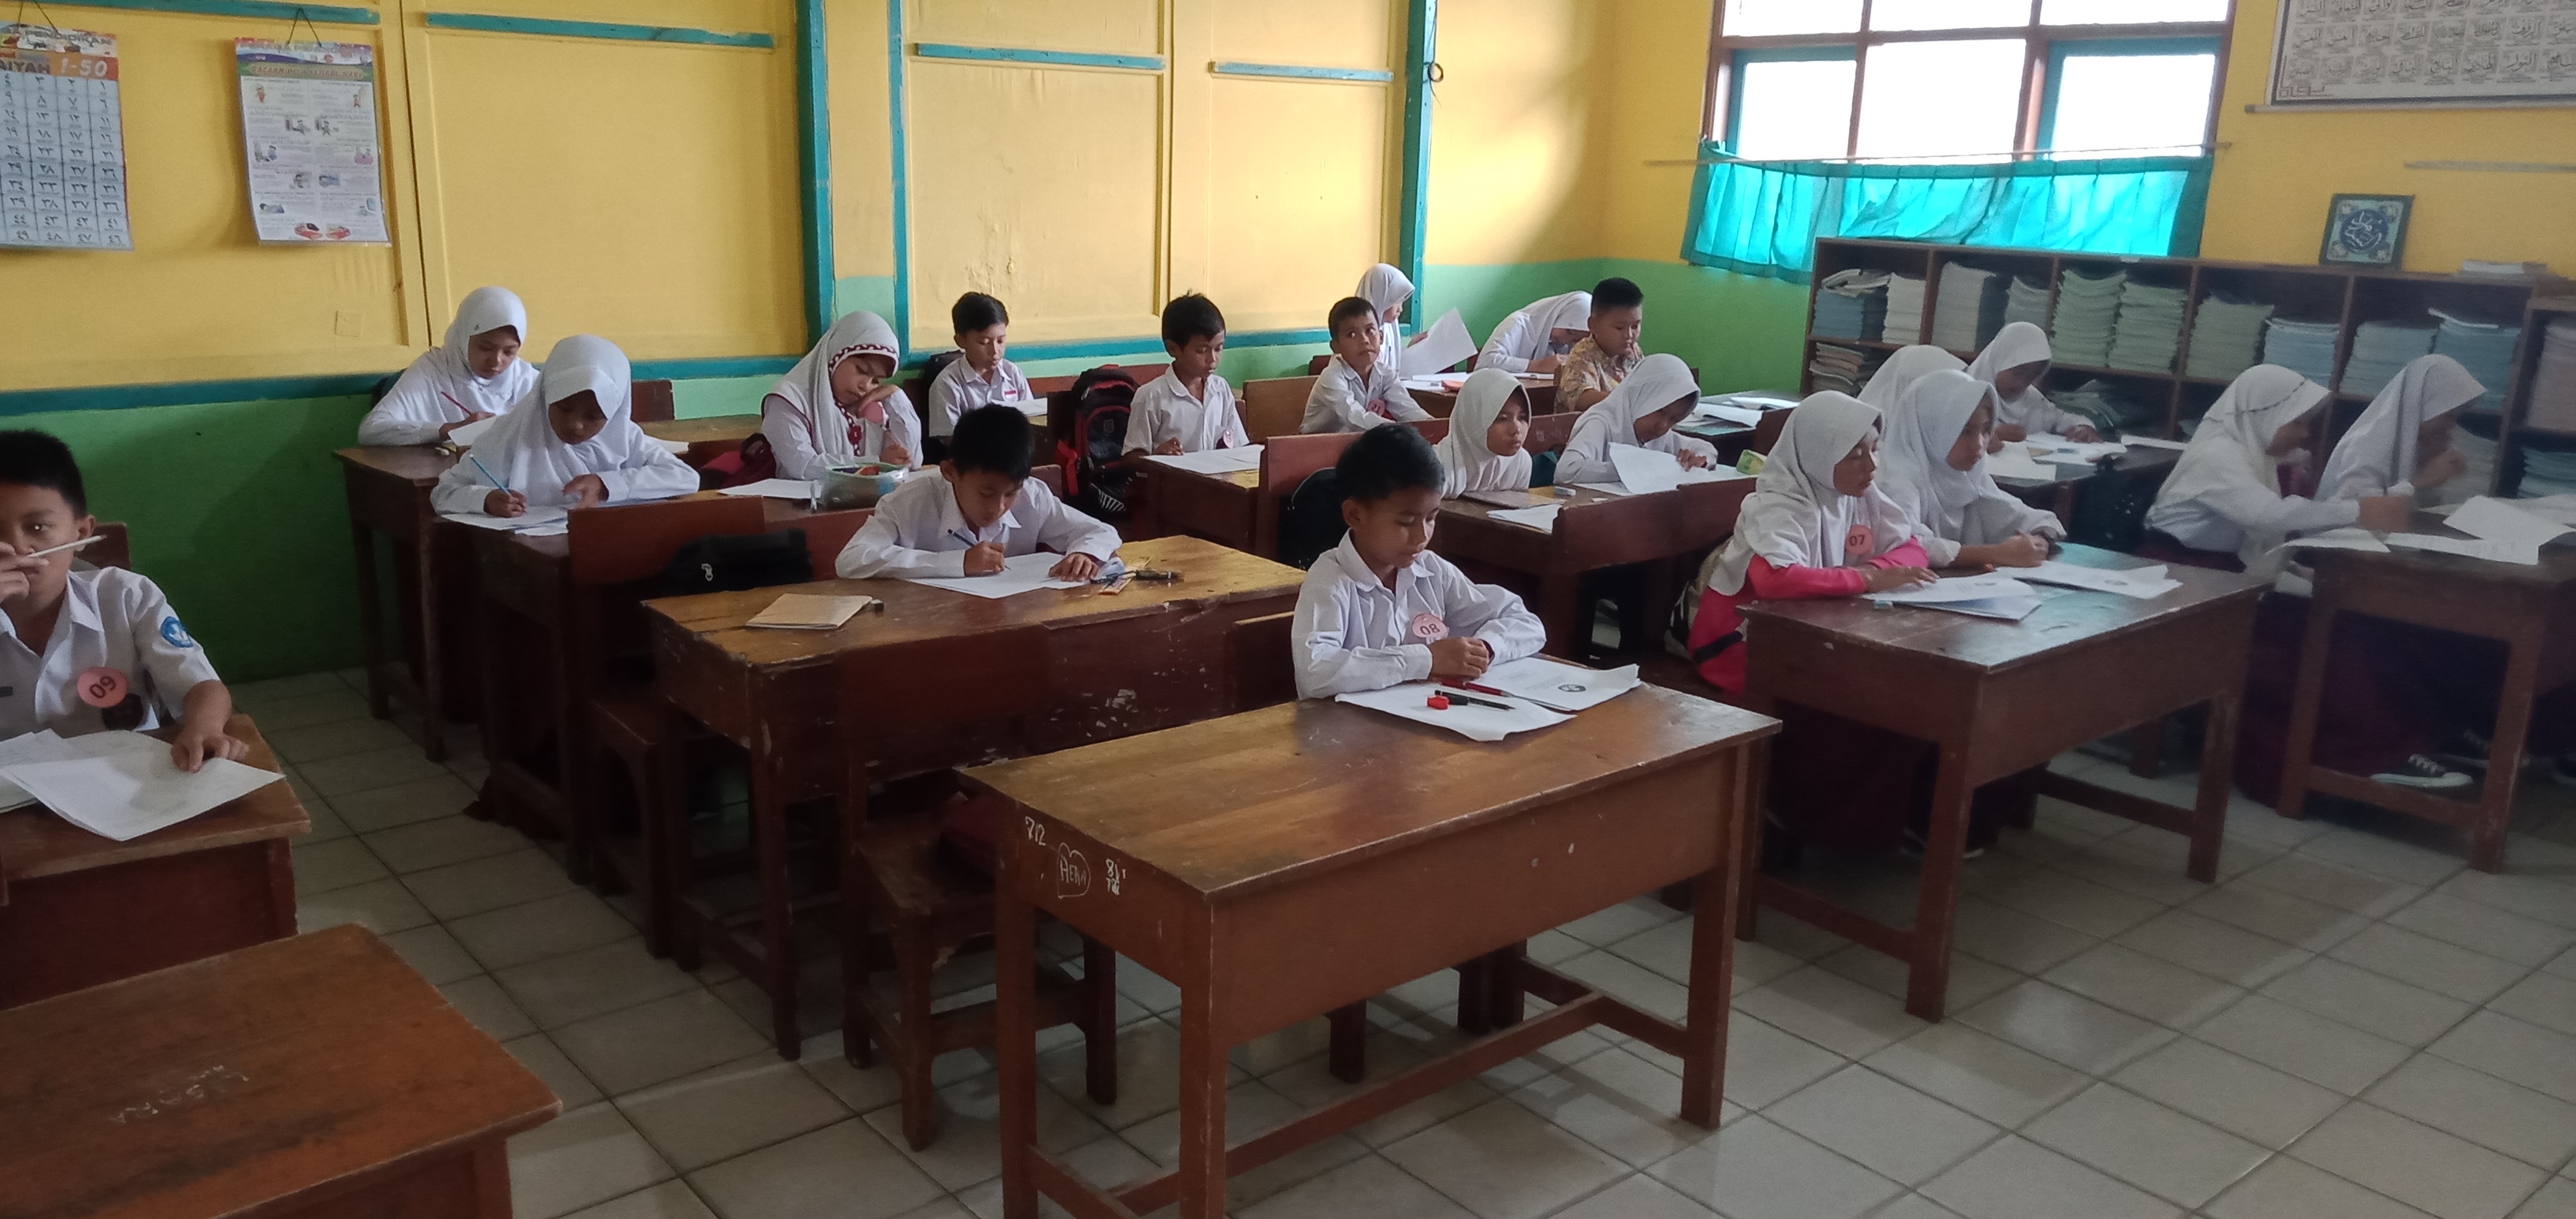 Libur Sekolah di Diperpanjang : Kadisdik Kab. Sukabumi, Pendidik dan Tenaga Kependidikan Masuk 9 Mei